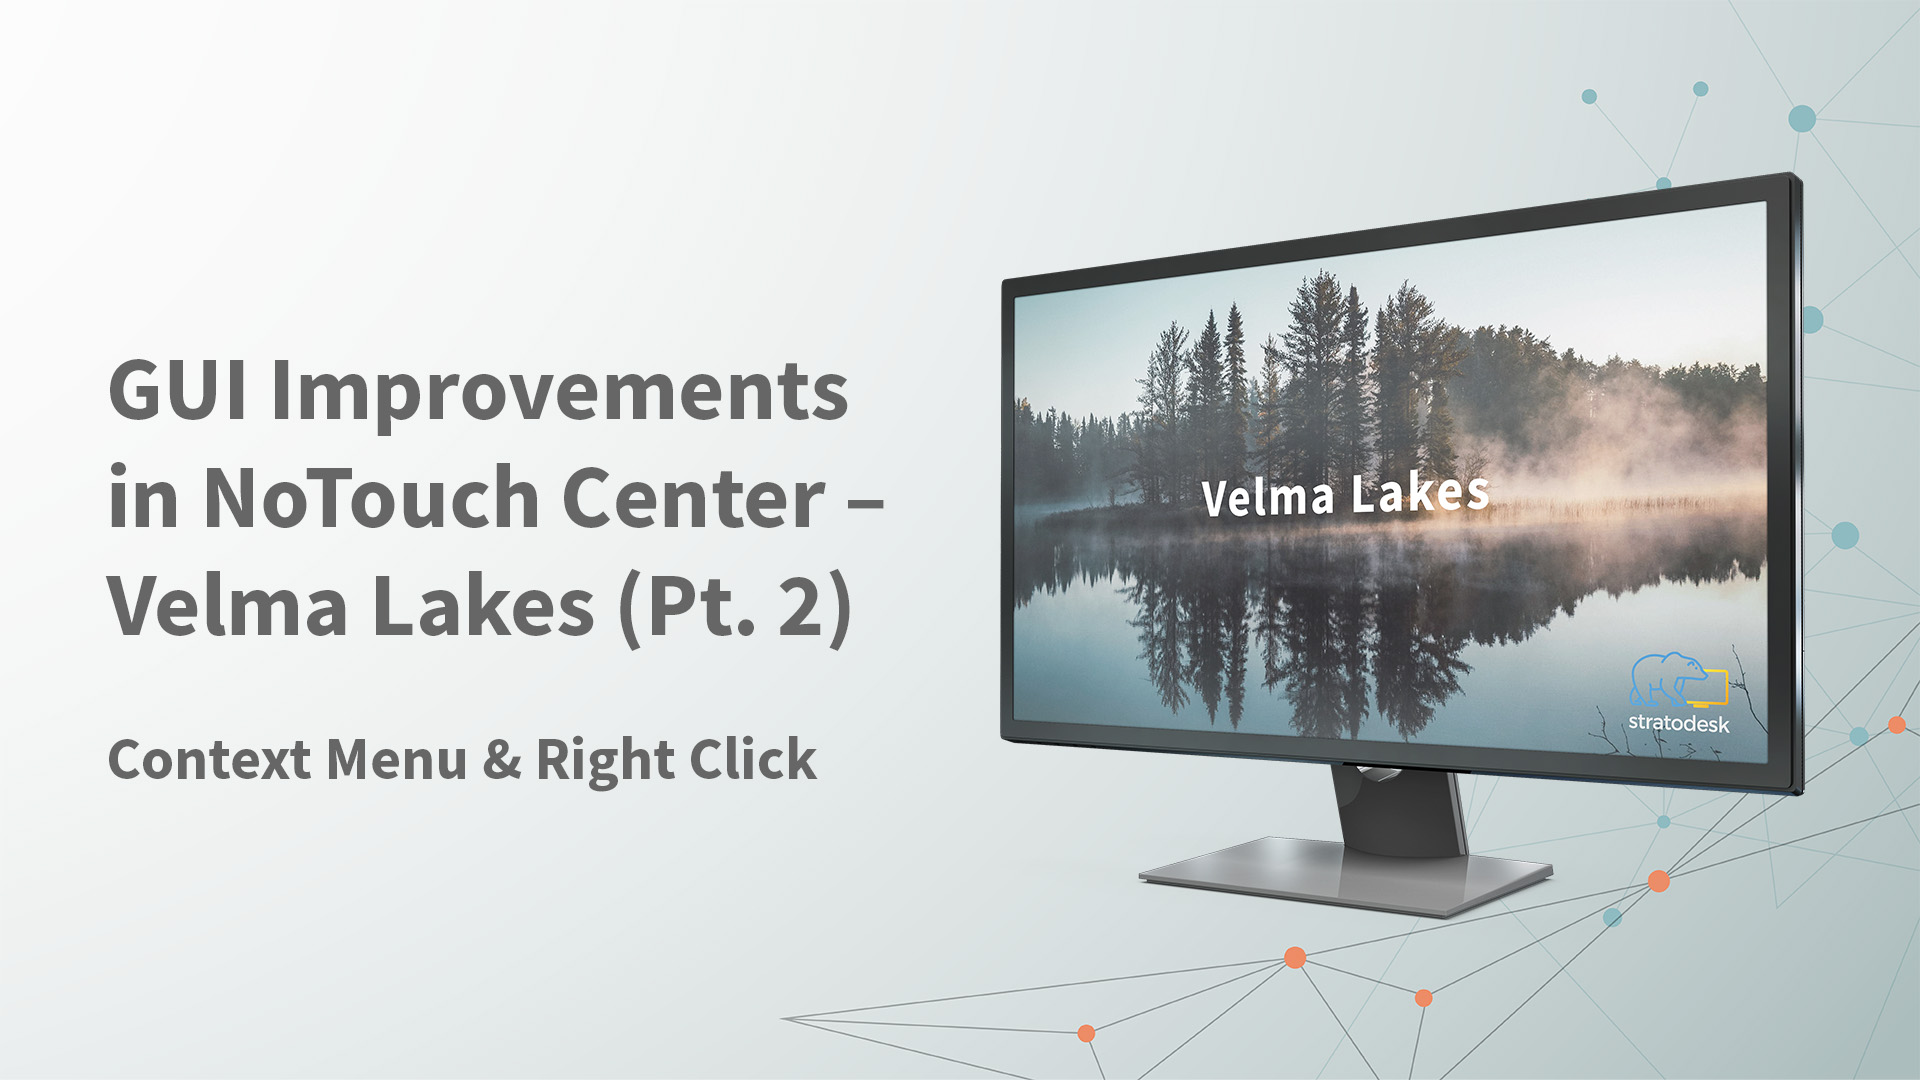 velma lakes right click